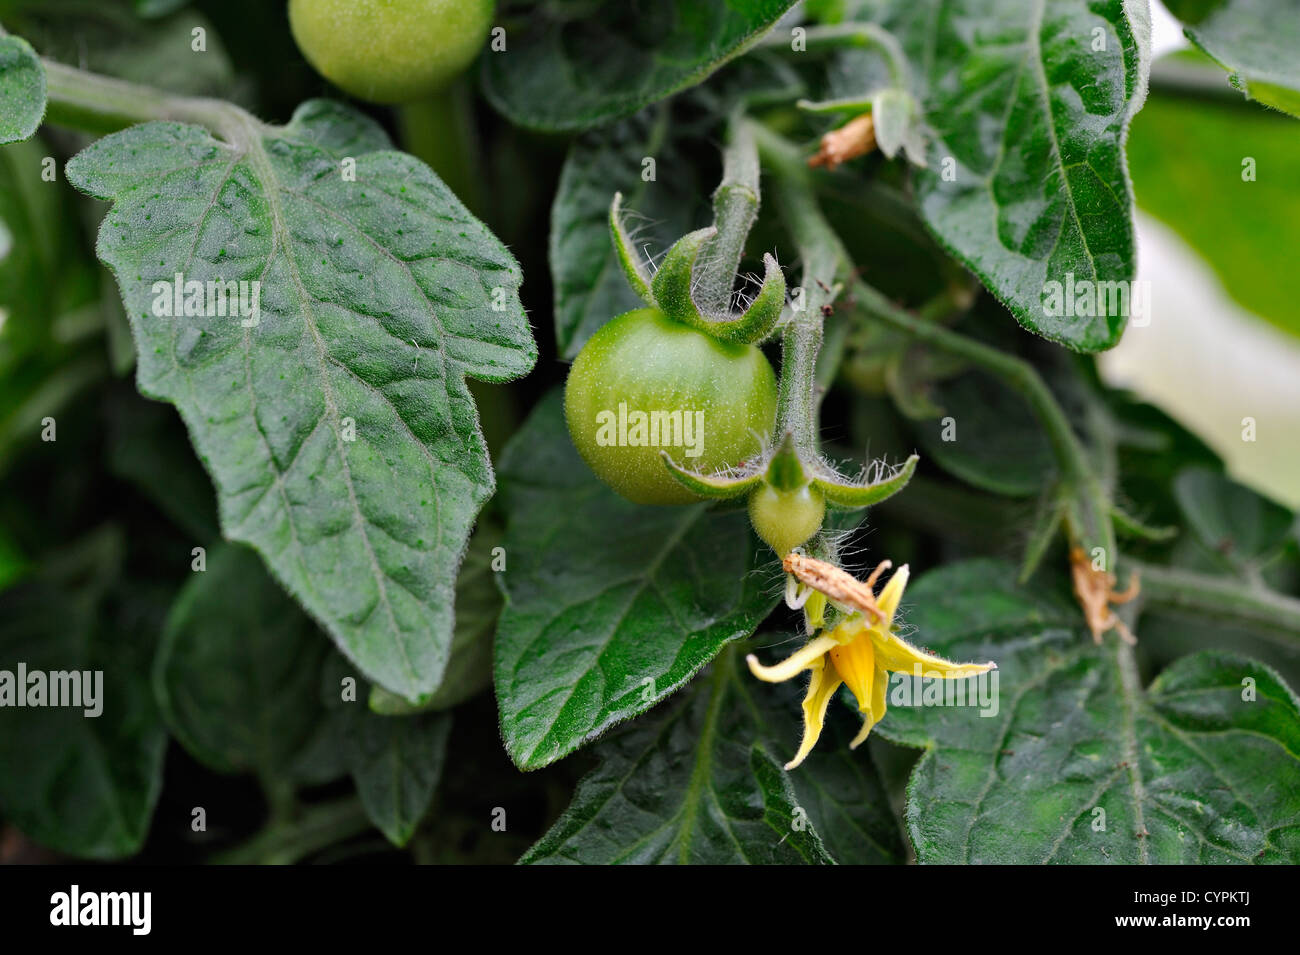 Planta De Tomate Bebe Fotos E Imagenes De Stock Alamy